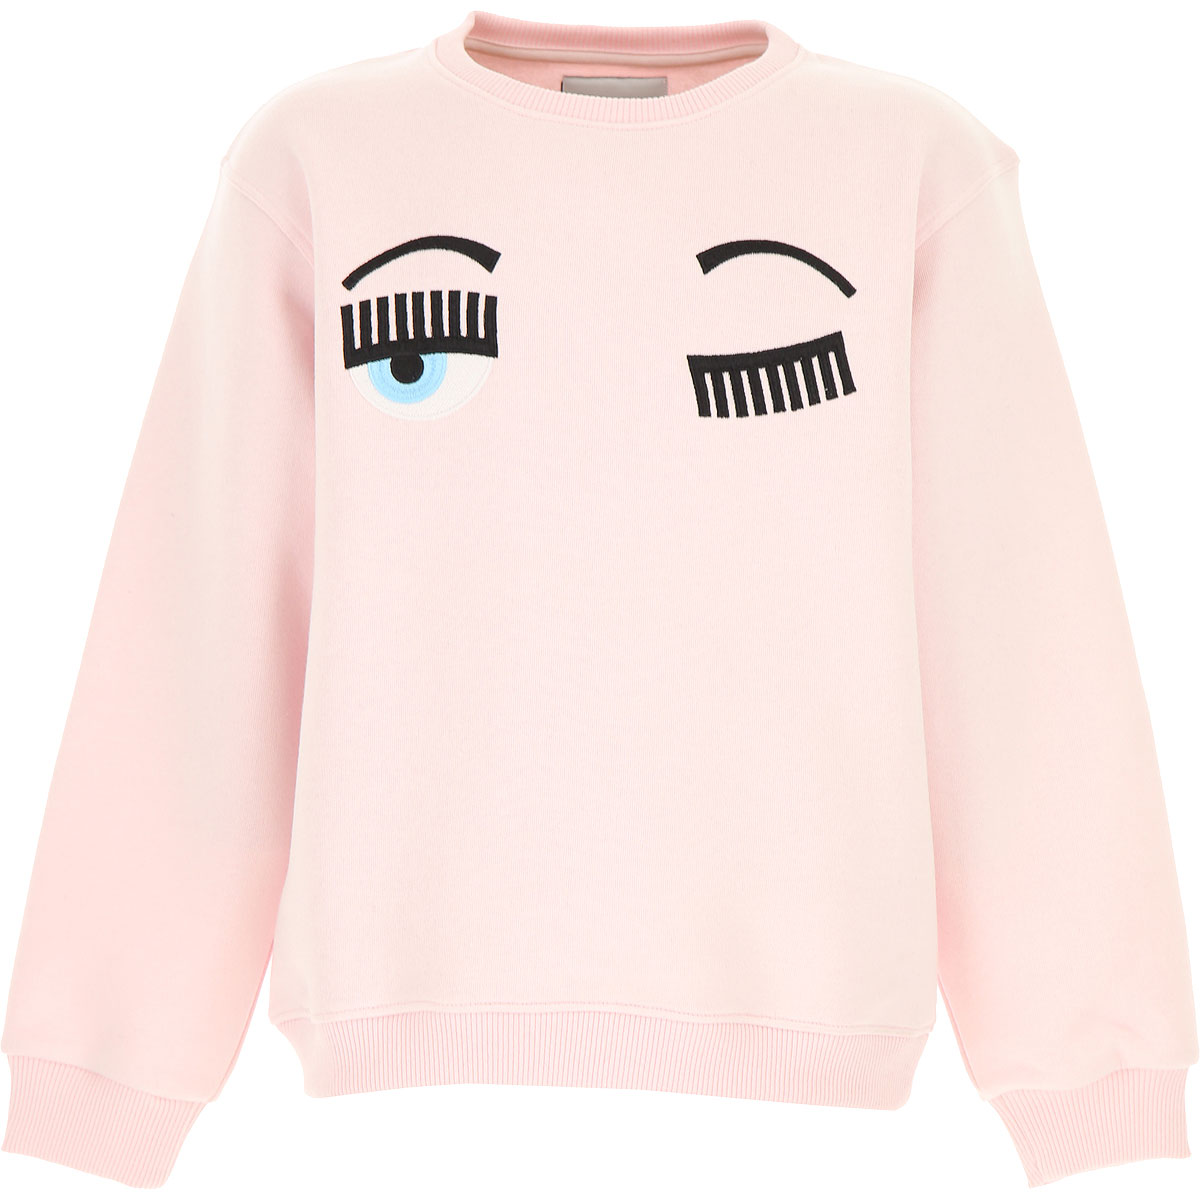 Chiara Ferragni Kinder Sweatshirt & Kapuzenpullover für Mädchen Günstig im Sale, Pink, Baumwolle, 2017, 10Y 10Y 12Y 12Y 14Y 14Y 6Y 8Y 8Y